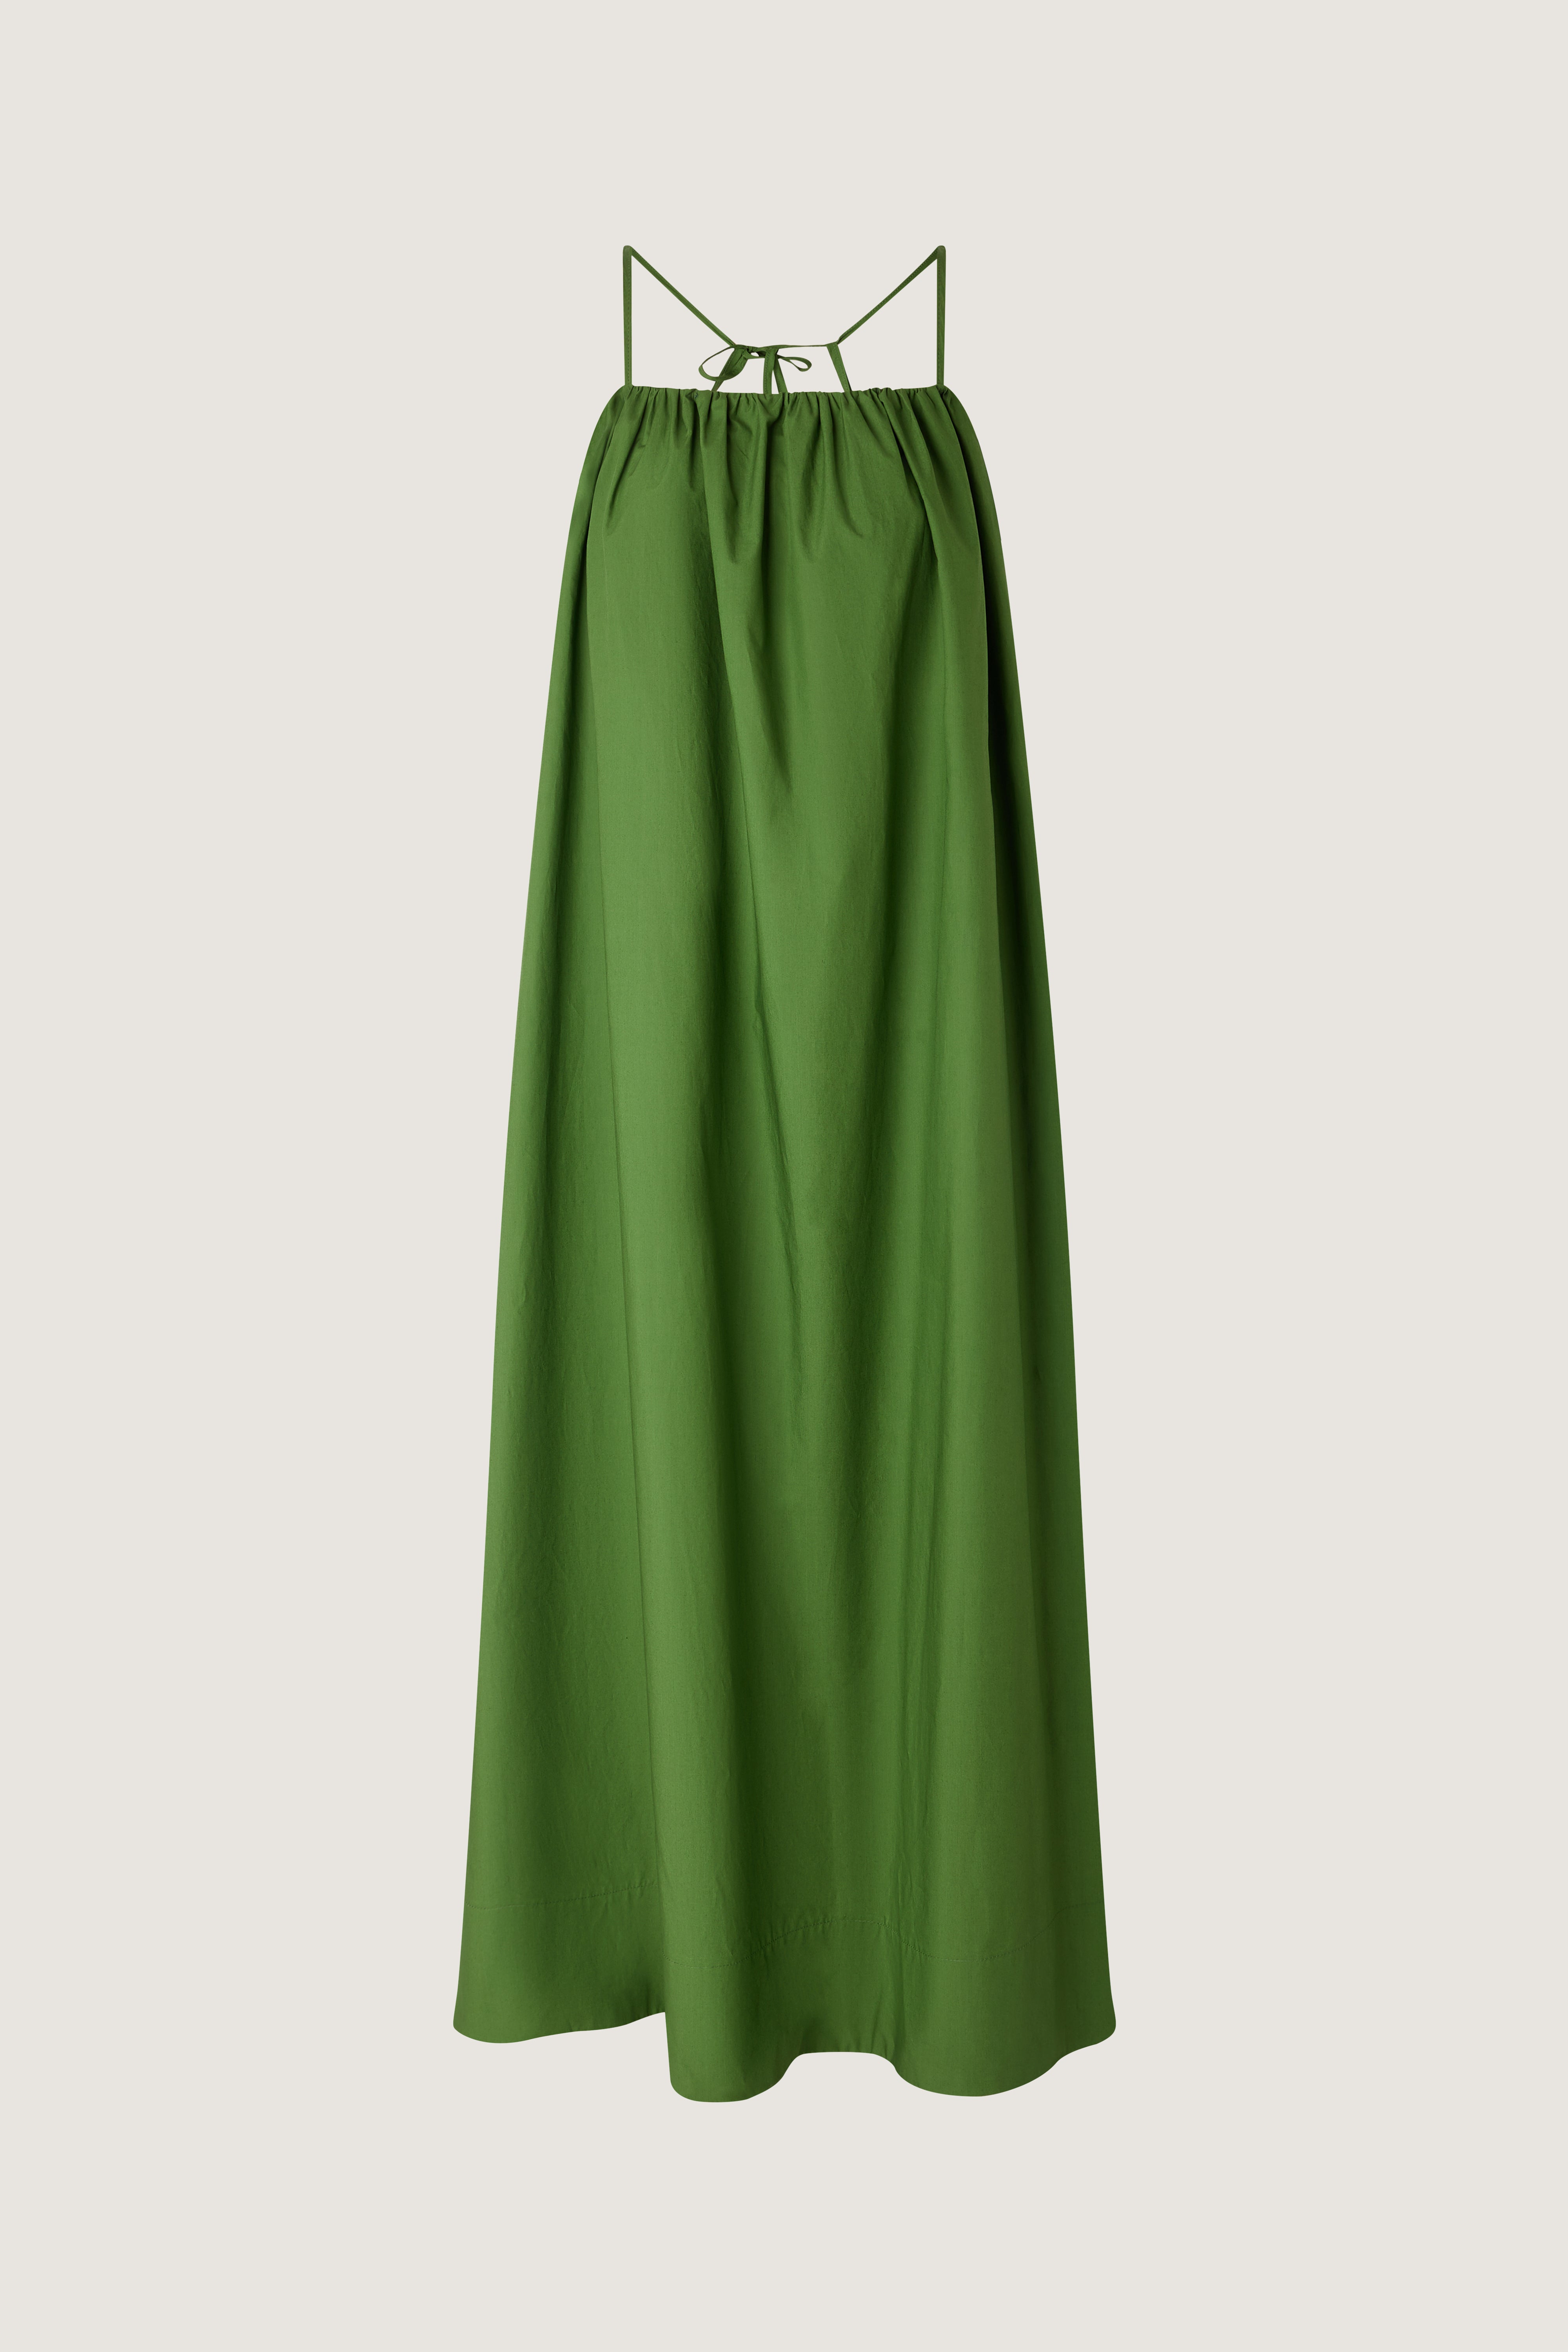 Soeur Arielle Green Dress